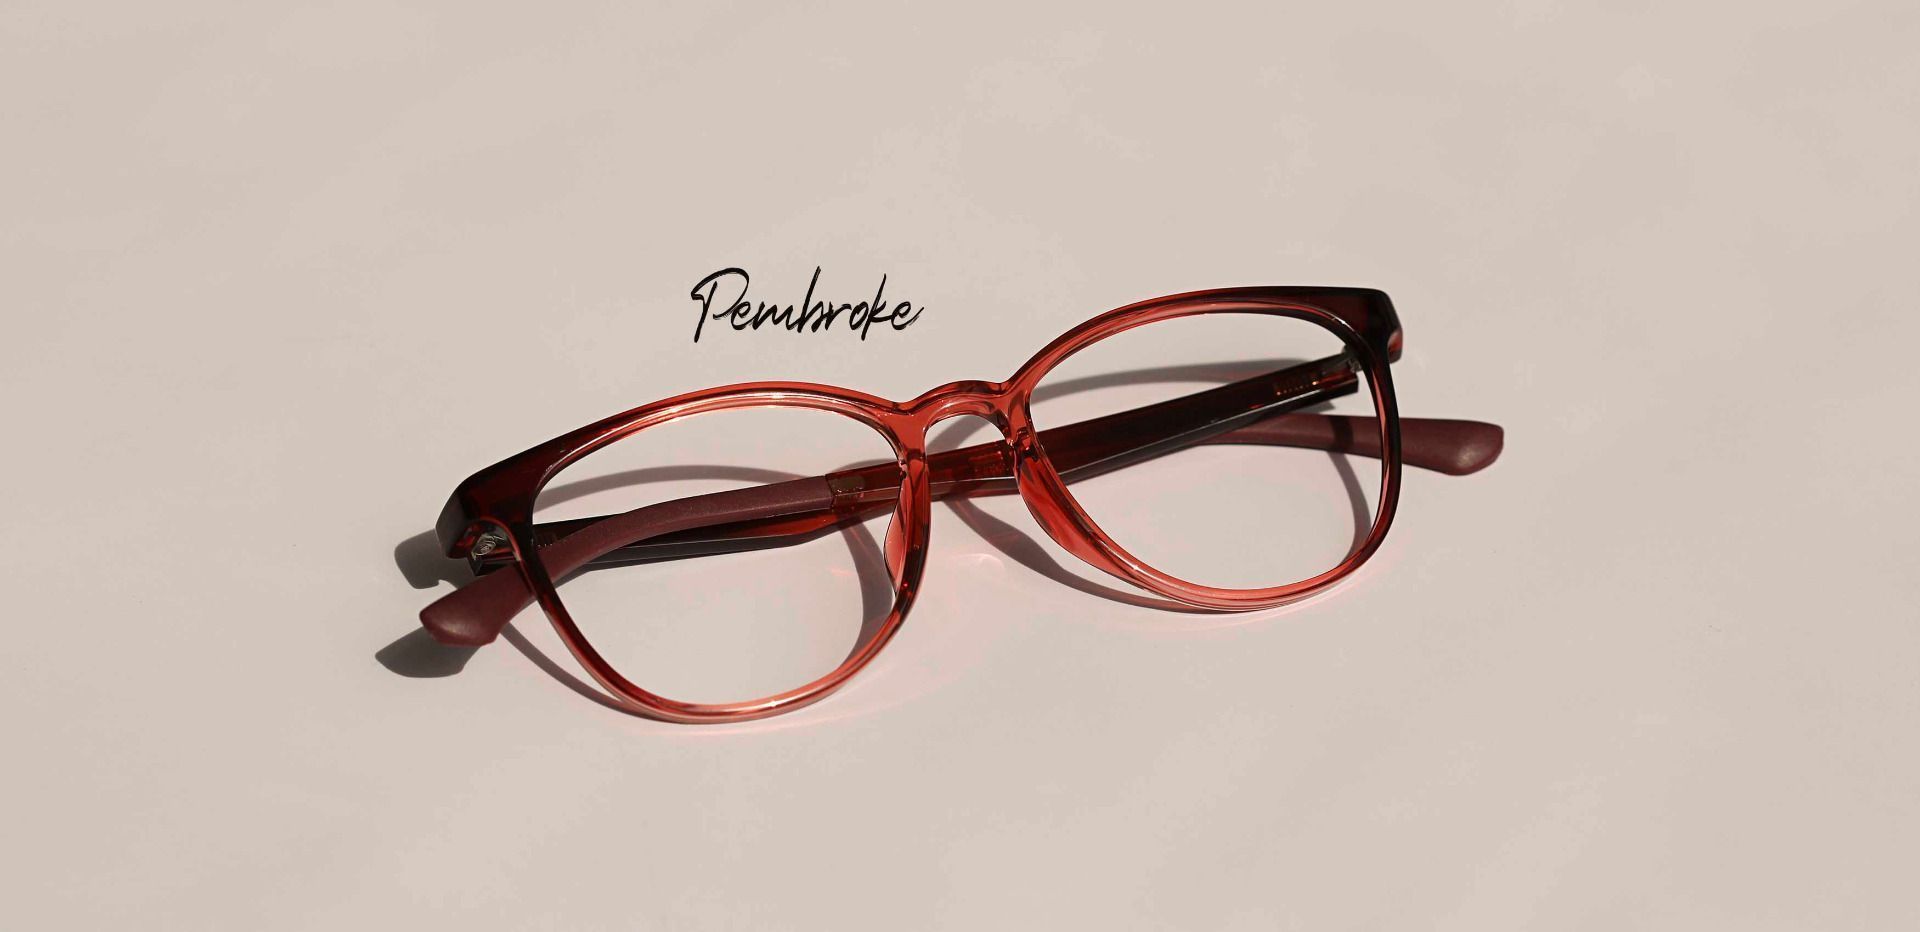 Pembroke Oval Reading Glasses - Pink